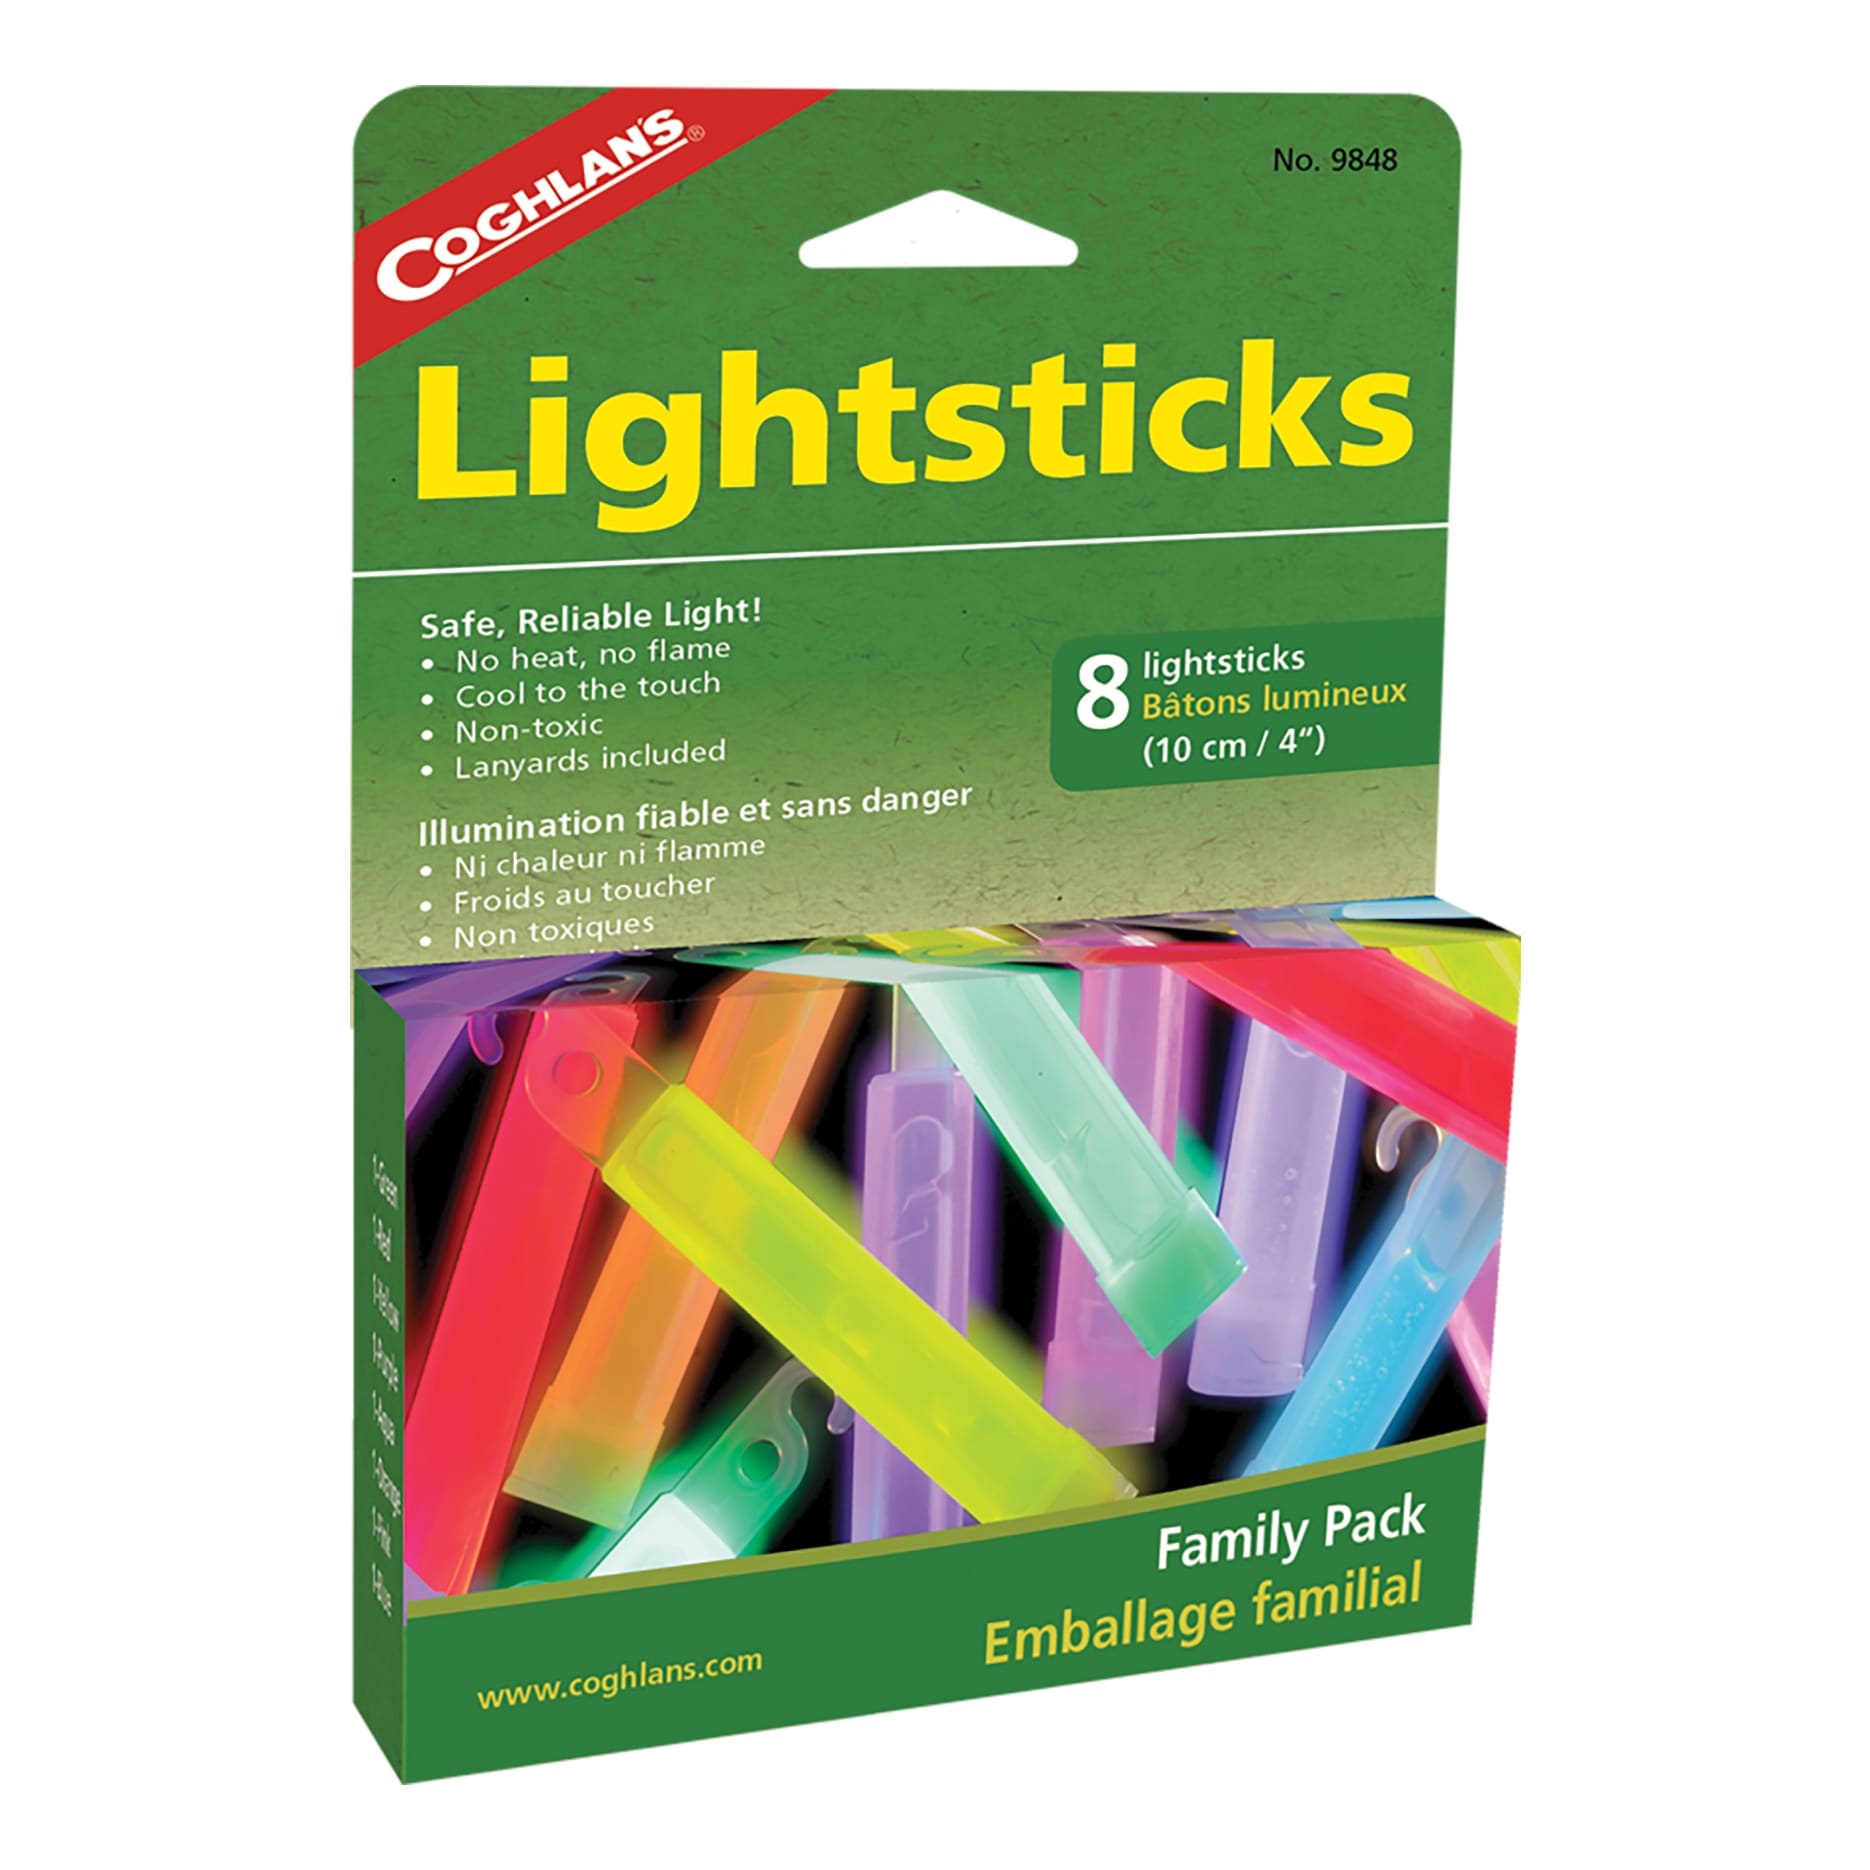 Coghlan's® Lightsticks